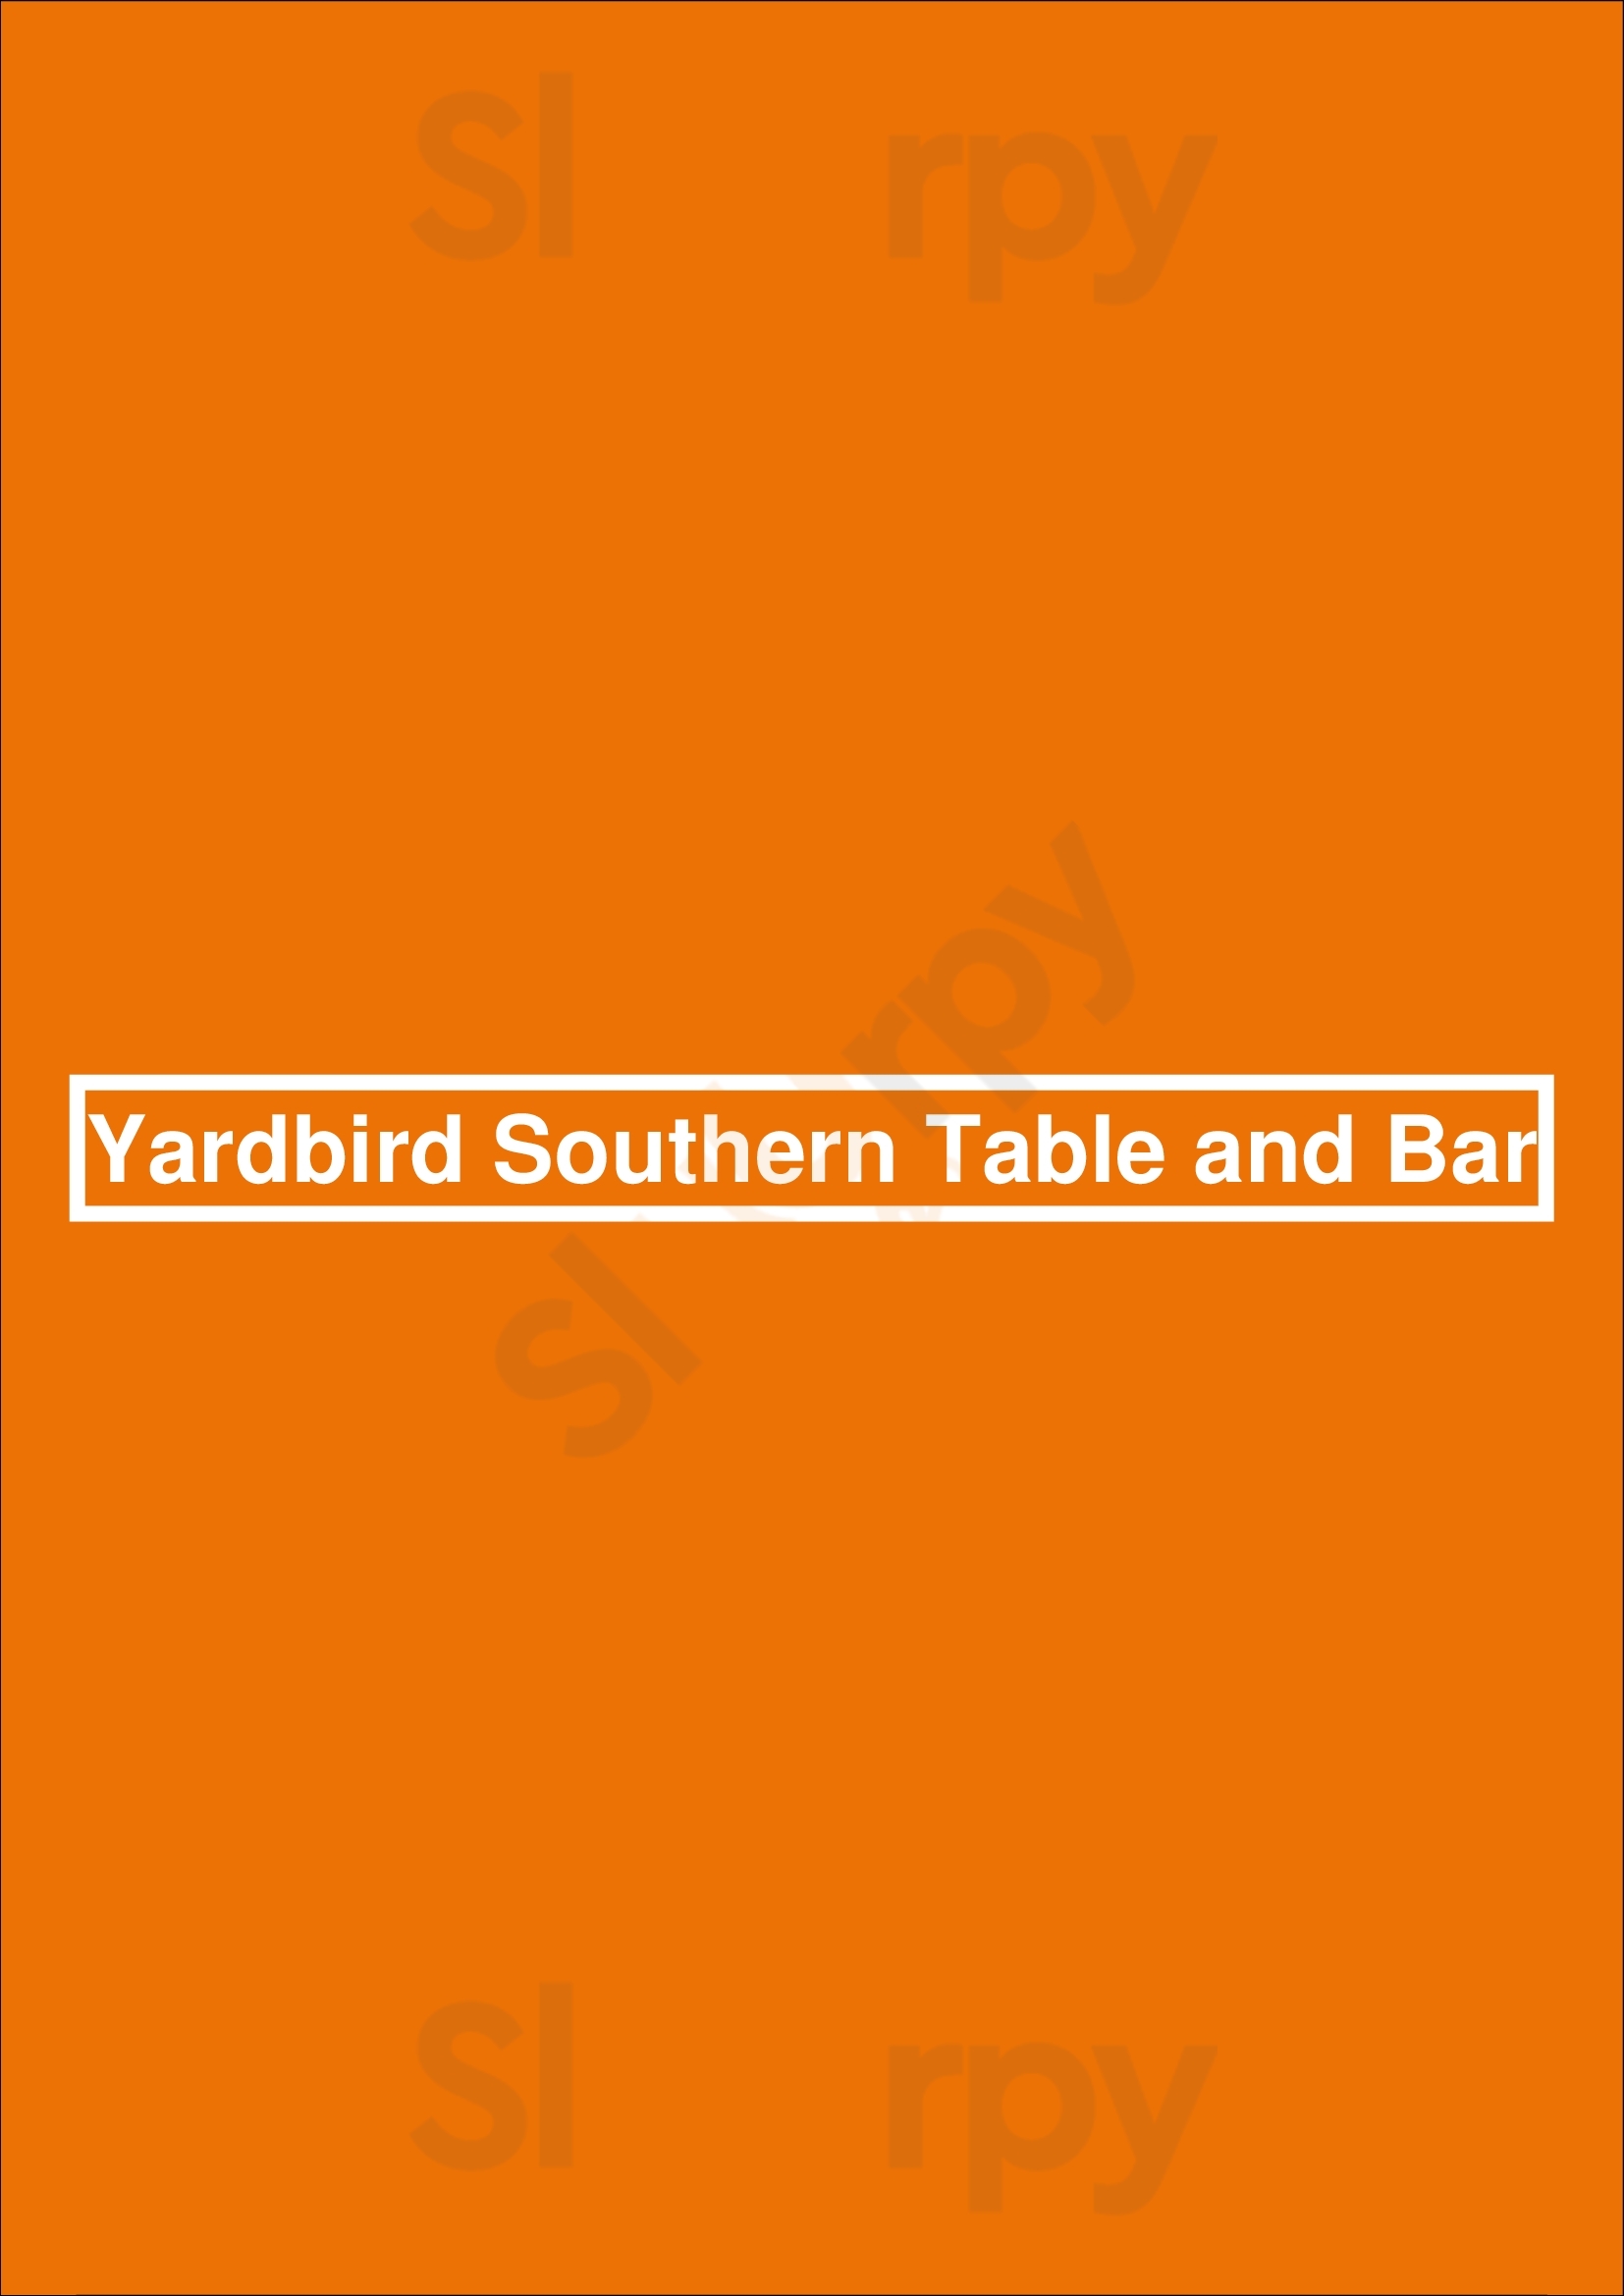 Yardbird Table & Bar Miami Beach Menu - 1